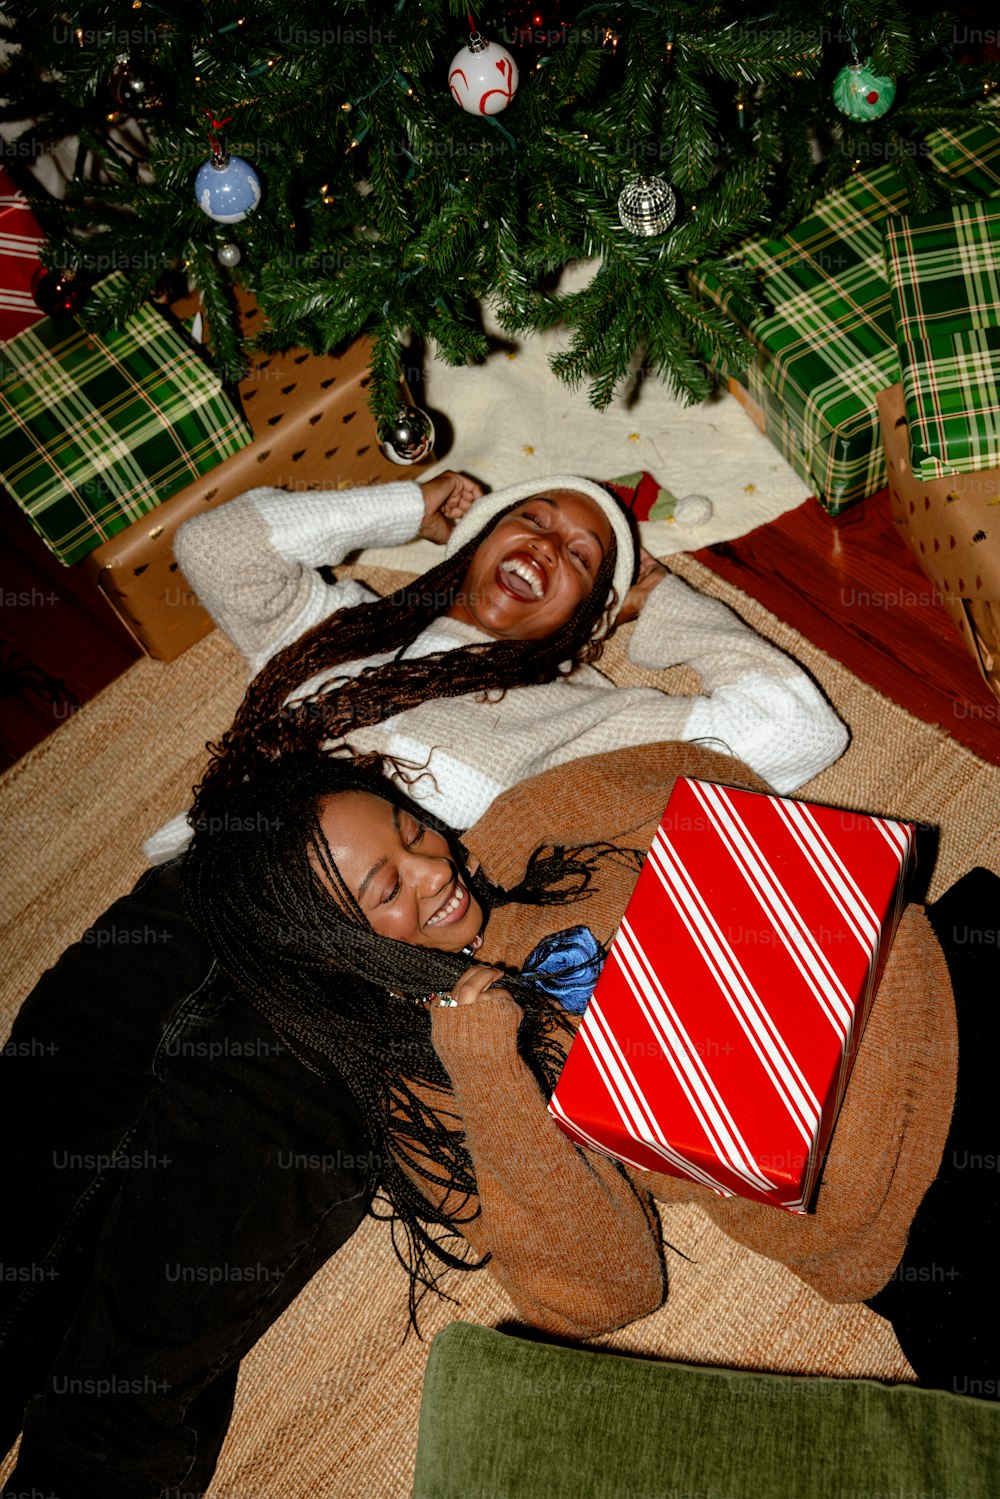 크리스마스 트리 옆에 누워 있는 두 명의 여성